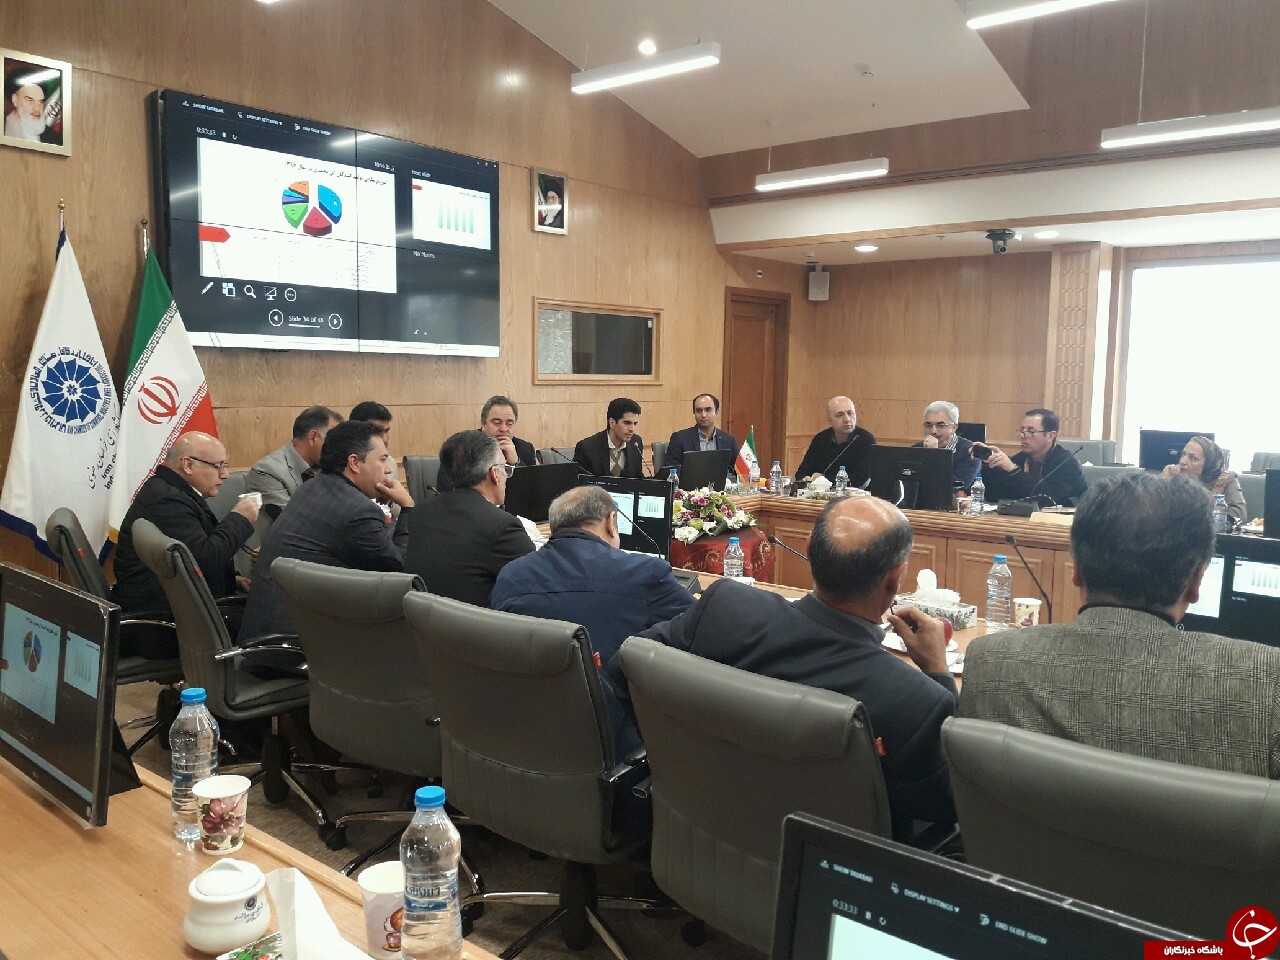 برگزاری نشست تخصصی گیاهان دارویی و زعفران در مشهد